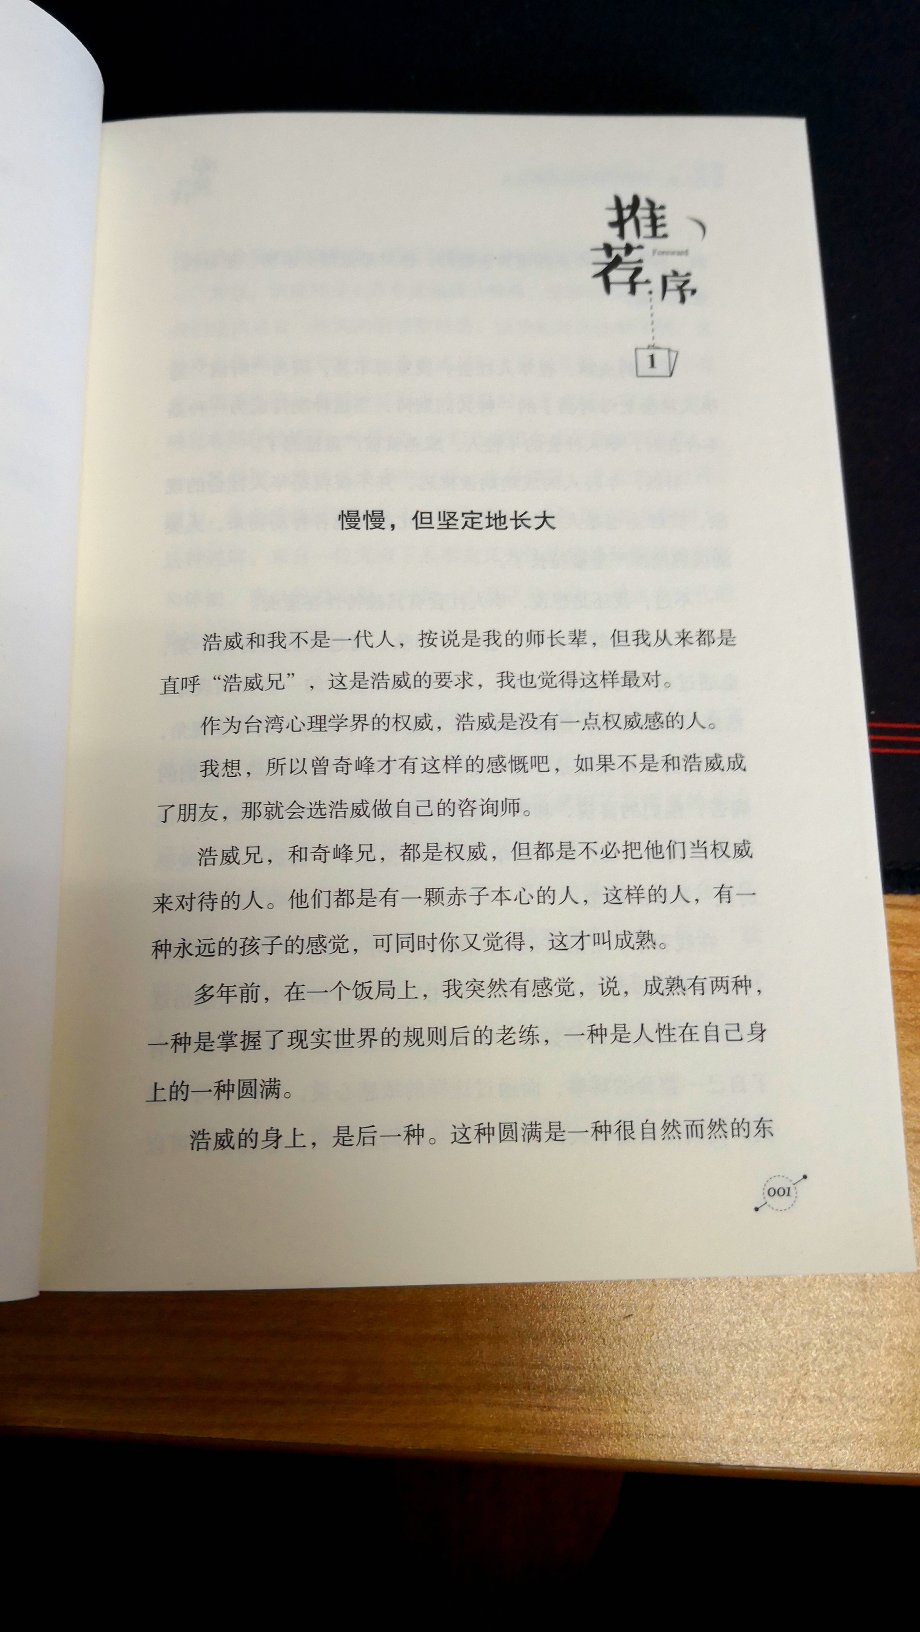 台湾心理学家的力作，我喜欢的心理学家武志红作序，非常值得一读。